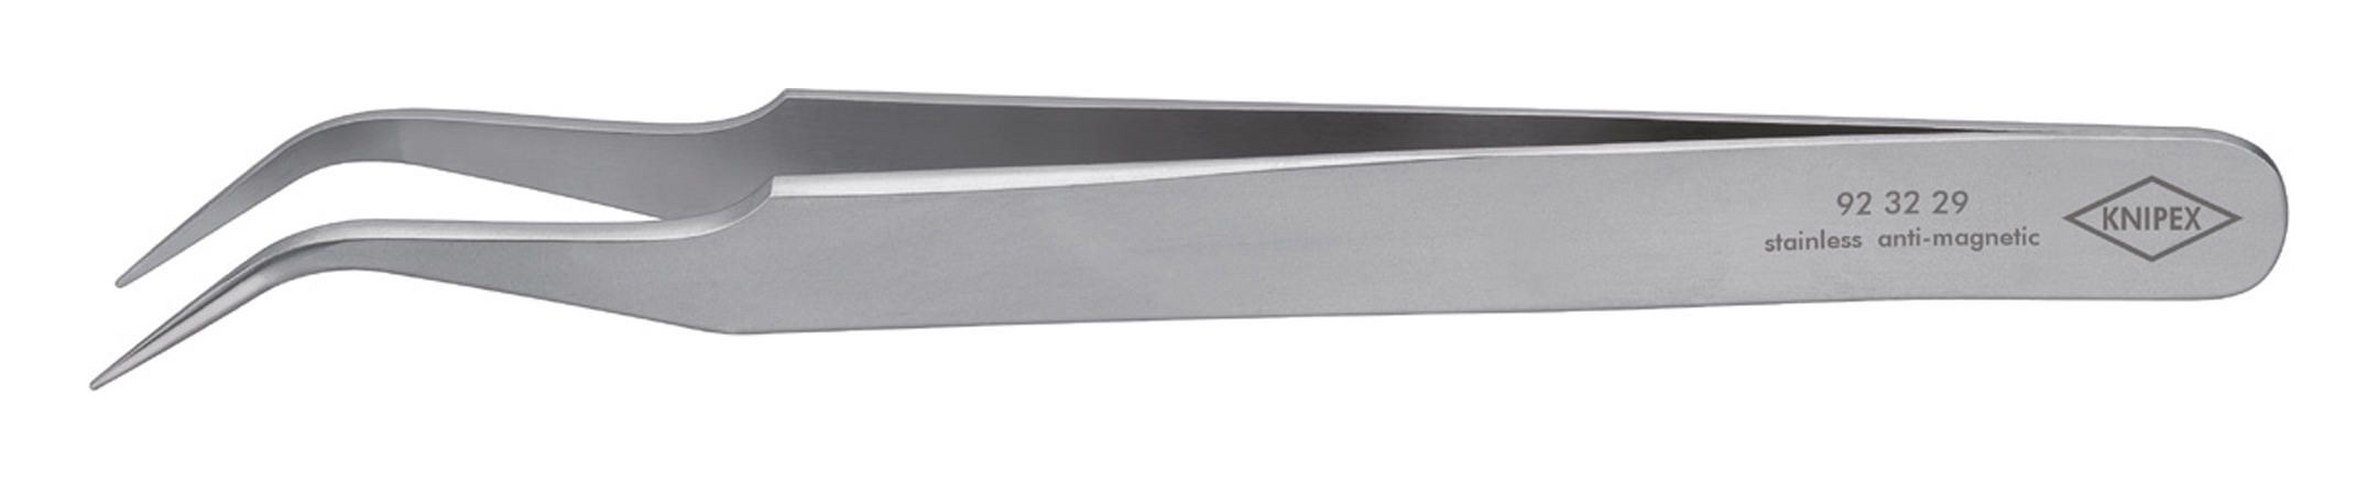 Knipex Pinzette, Präzisions Sichelform 120 mm rostfrei